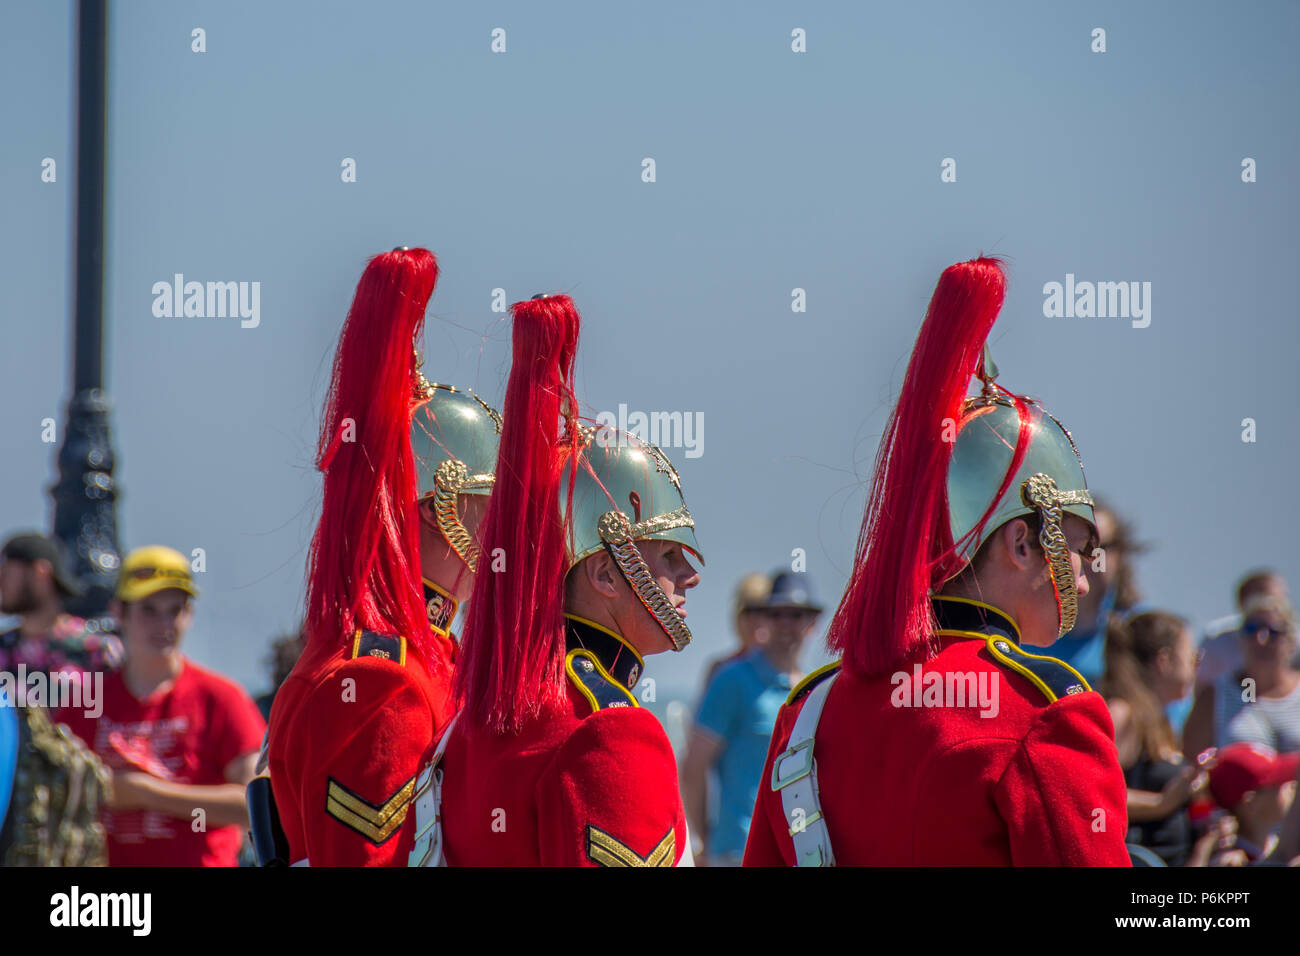 Streitkräfte Tag 2018 in Llandudno. Marching Lote in rote Uniformen. Ein sehr heißer Tag. Soldaten Schwitzen in Uniform. Stockfoto